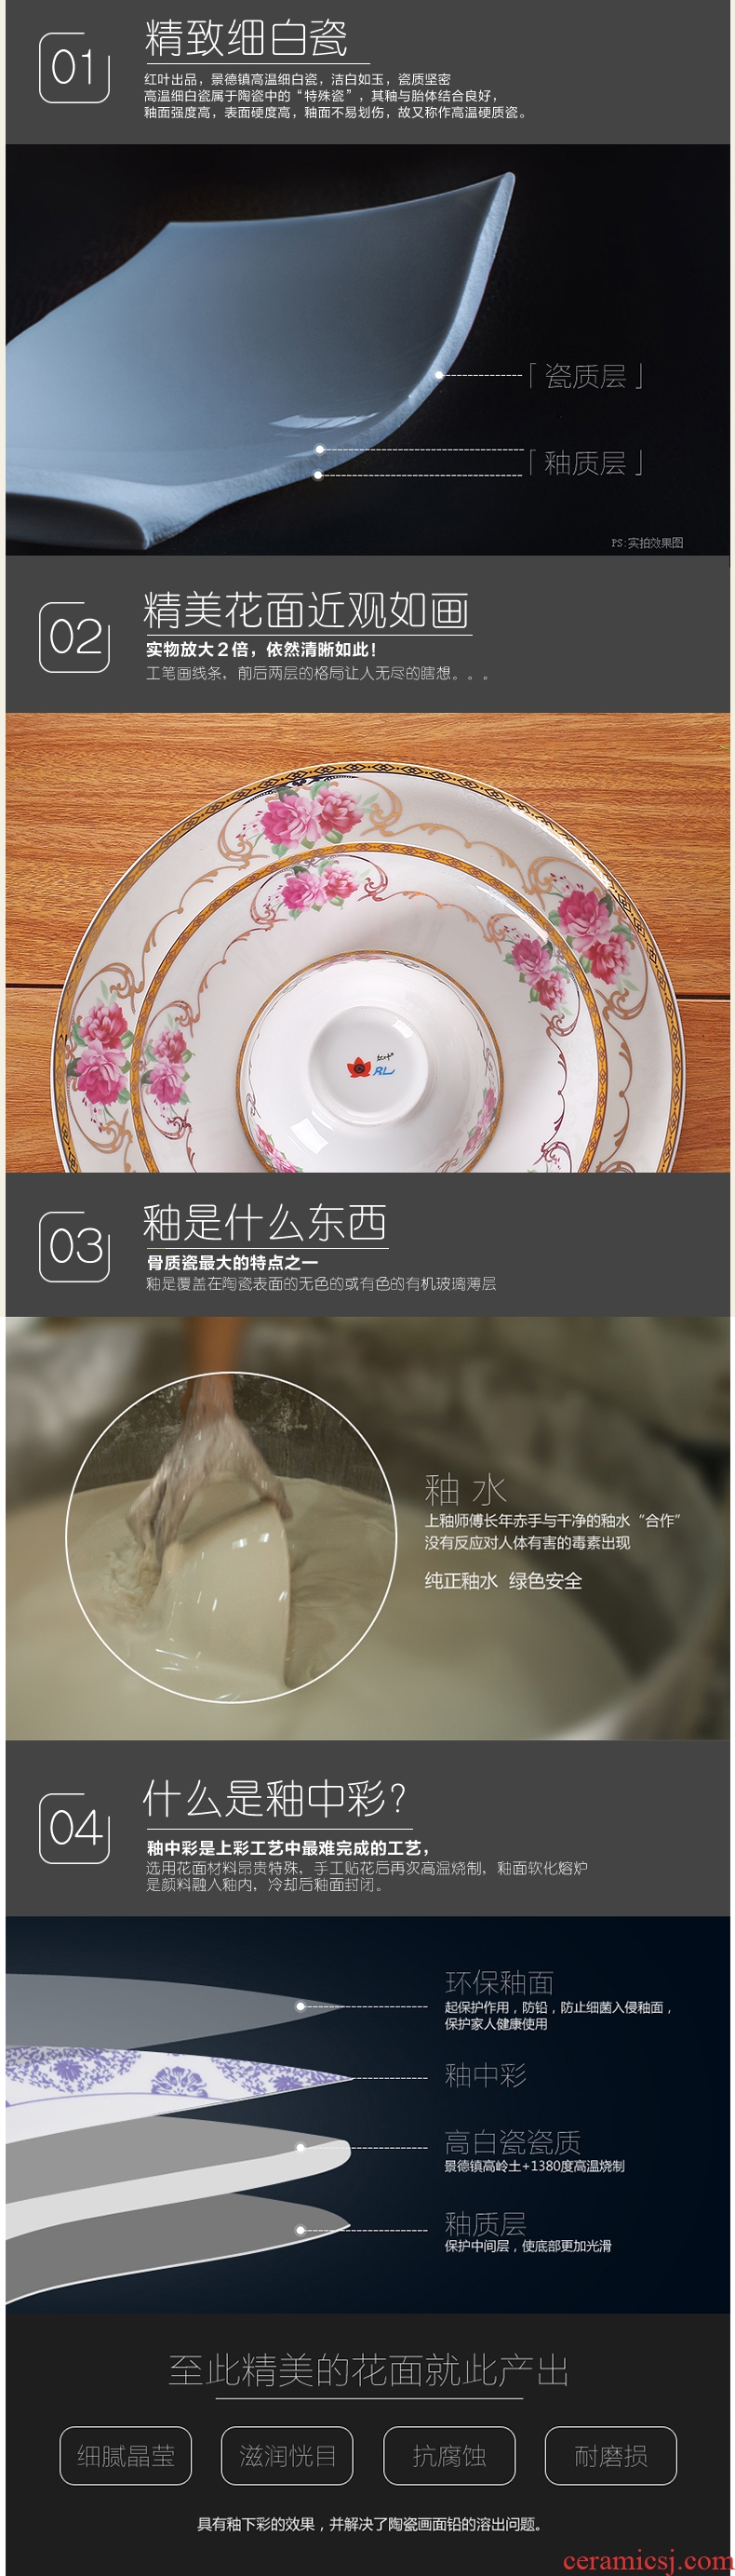 Red leaves tableware jingdezhen ceramic bowl sets rural wind ceramic bowl chopsticks dishes porcelain tableware